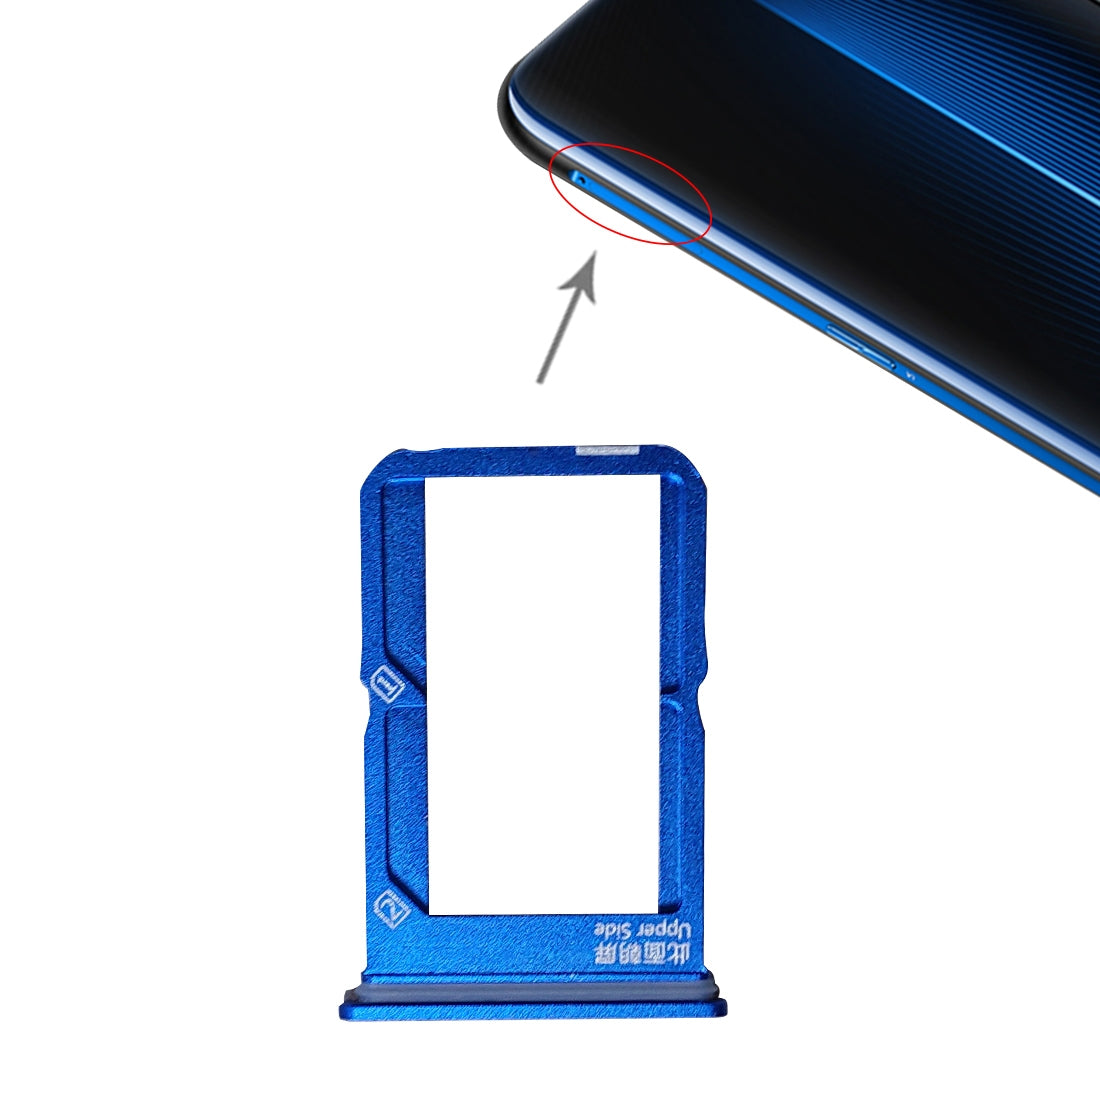 Dual SIM Vivo iQOO Blue SIM Holder Tray